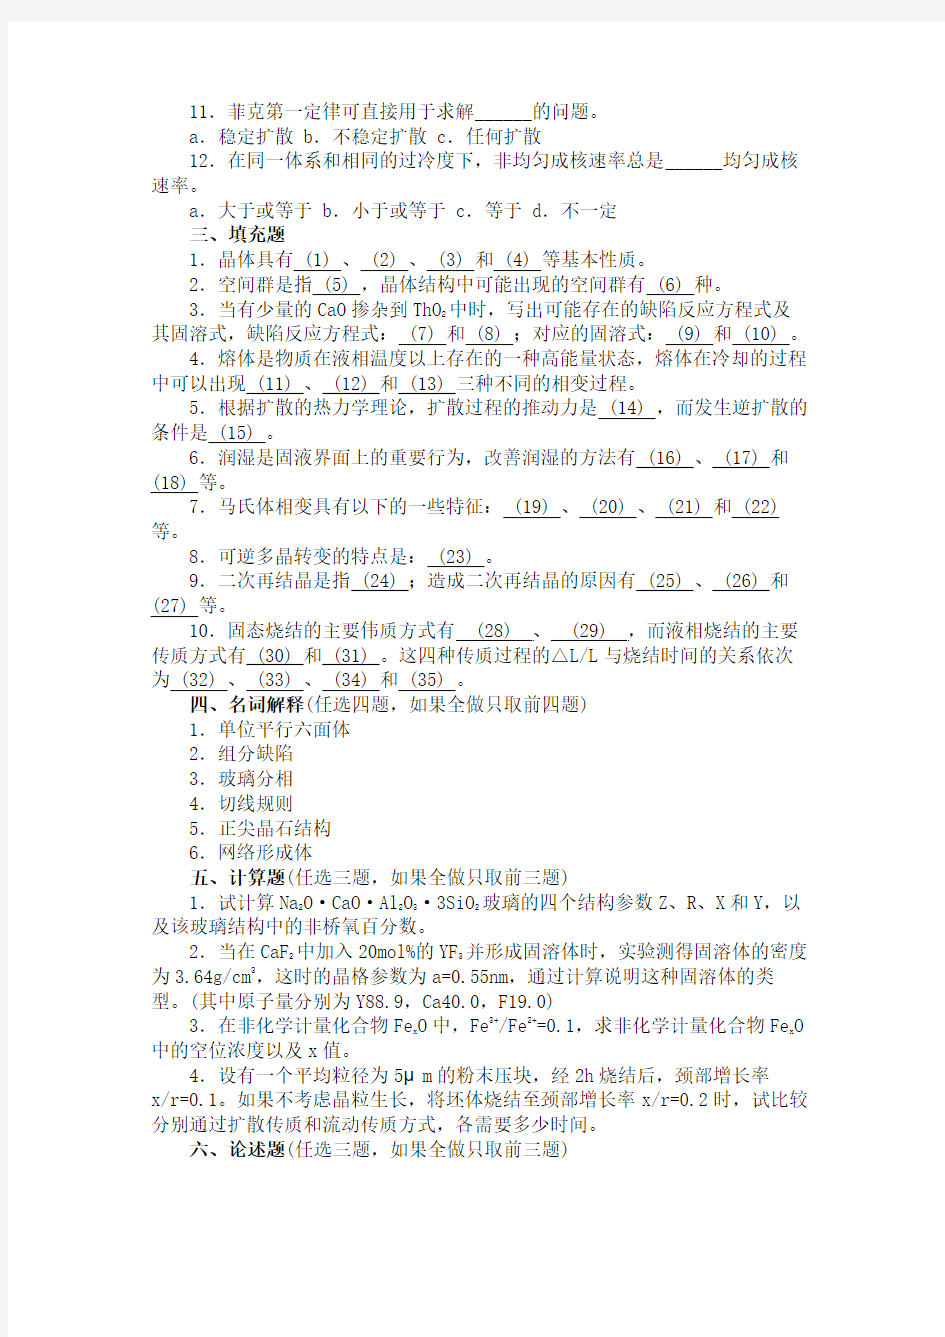 南京工业大学硕士材料科学基础真题2009年(1)